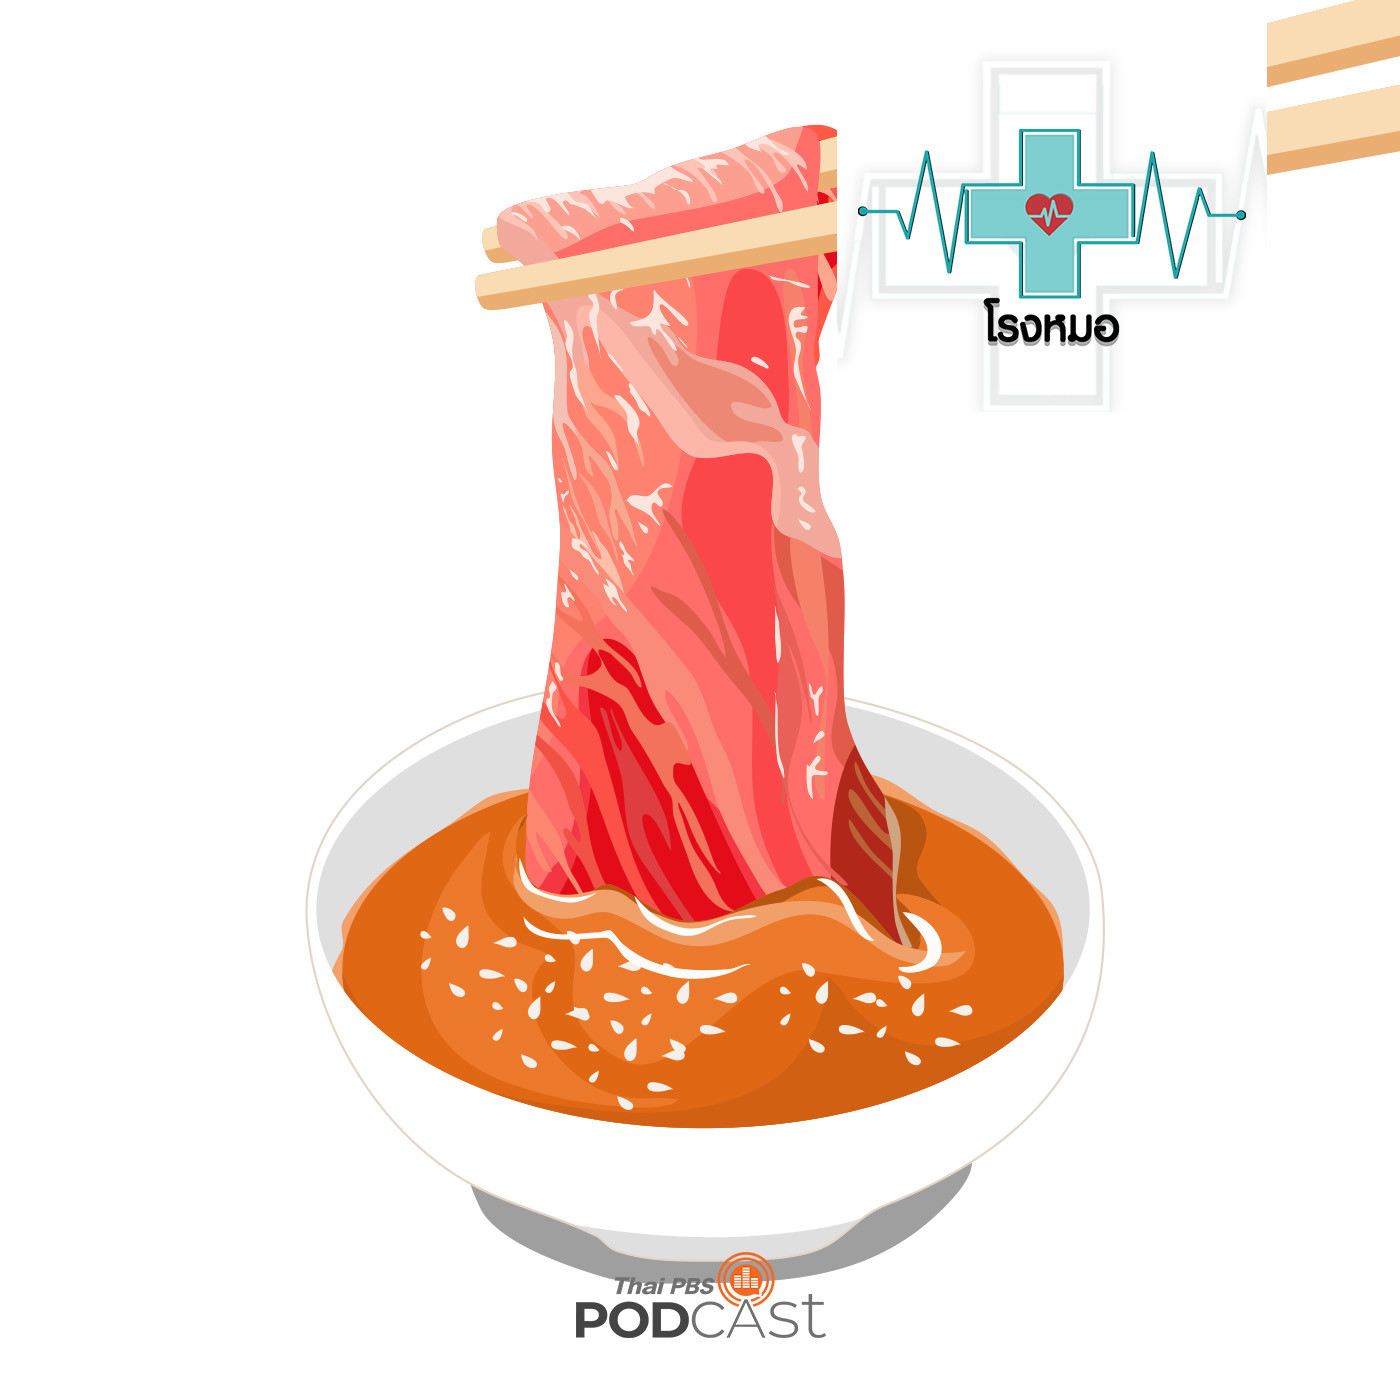 โรงหมอ EP. 809: กินเนื้อหมูไม่สุกหรือกินดิบ ระวังโรคไข้หูดับ